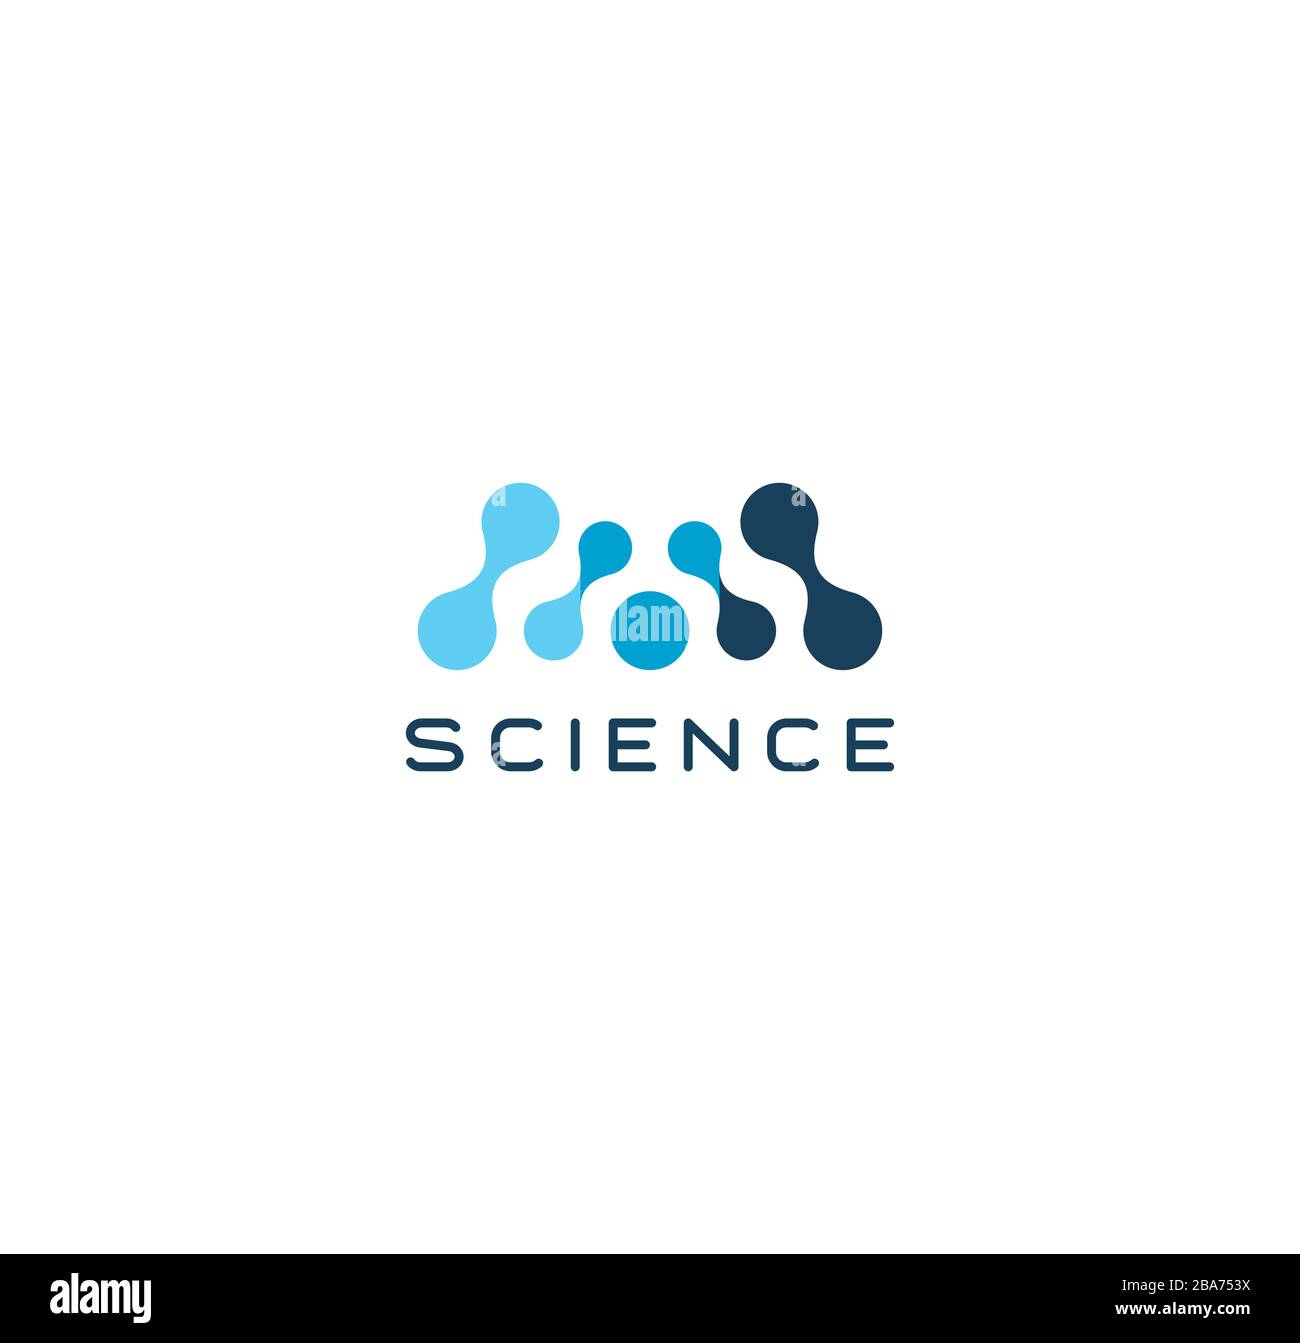 Abstraktes Wissenschaftssymbol, blauer Buchstabe M. gestrichelte Logo-Vorlage, flaches Konzept Logotyp Design für innovative Technologie Business, Medizin und Bildung Stock Vektor